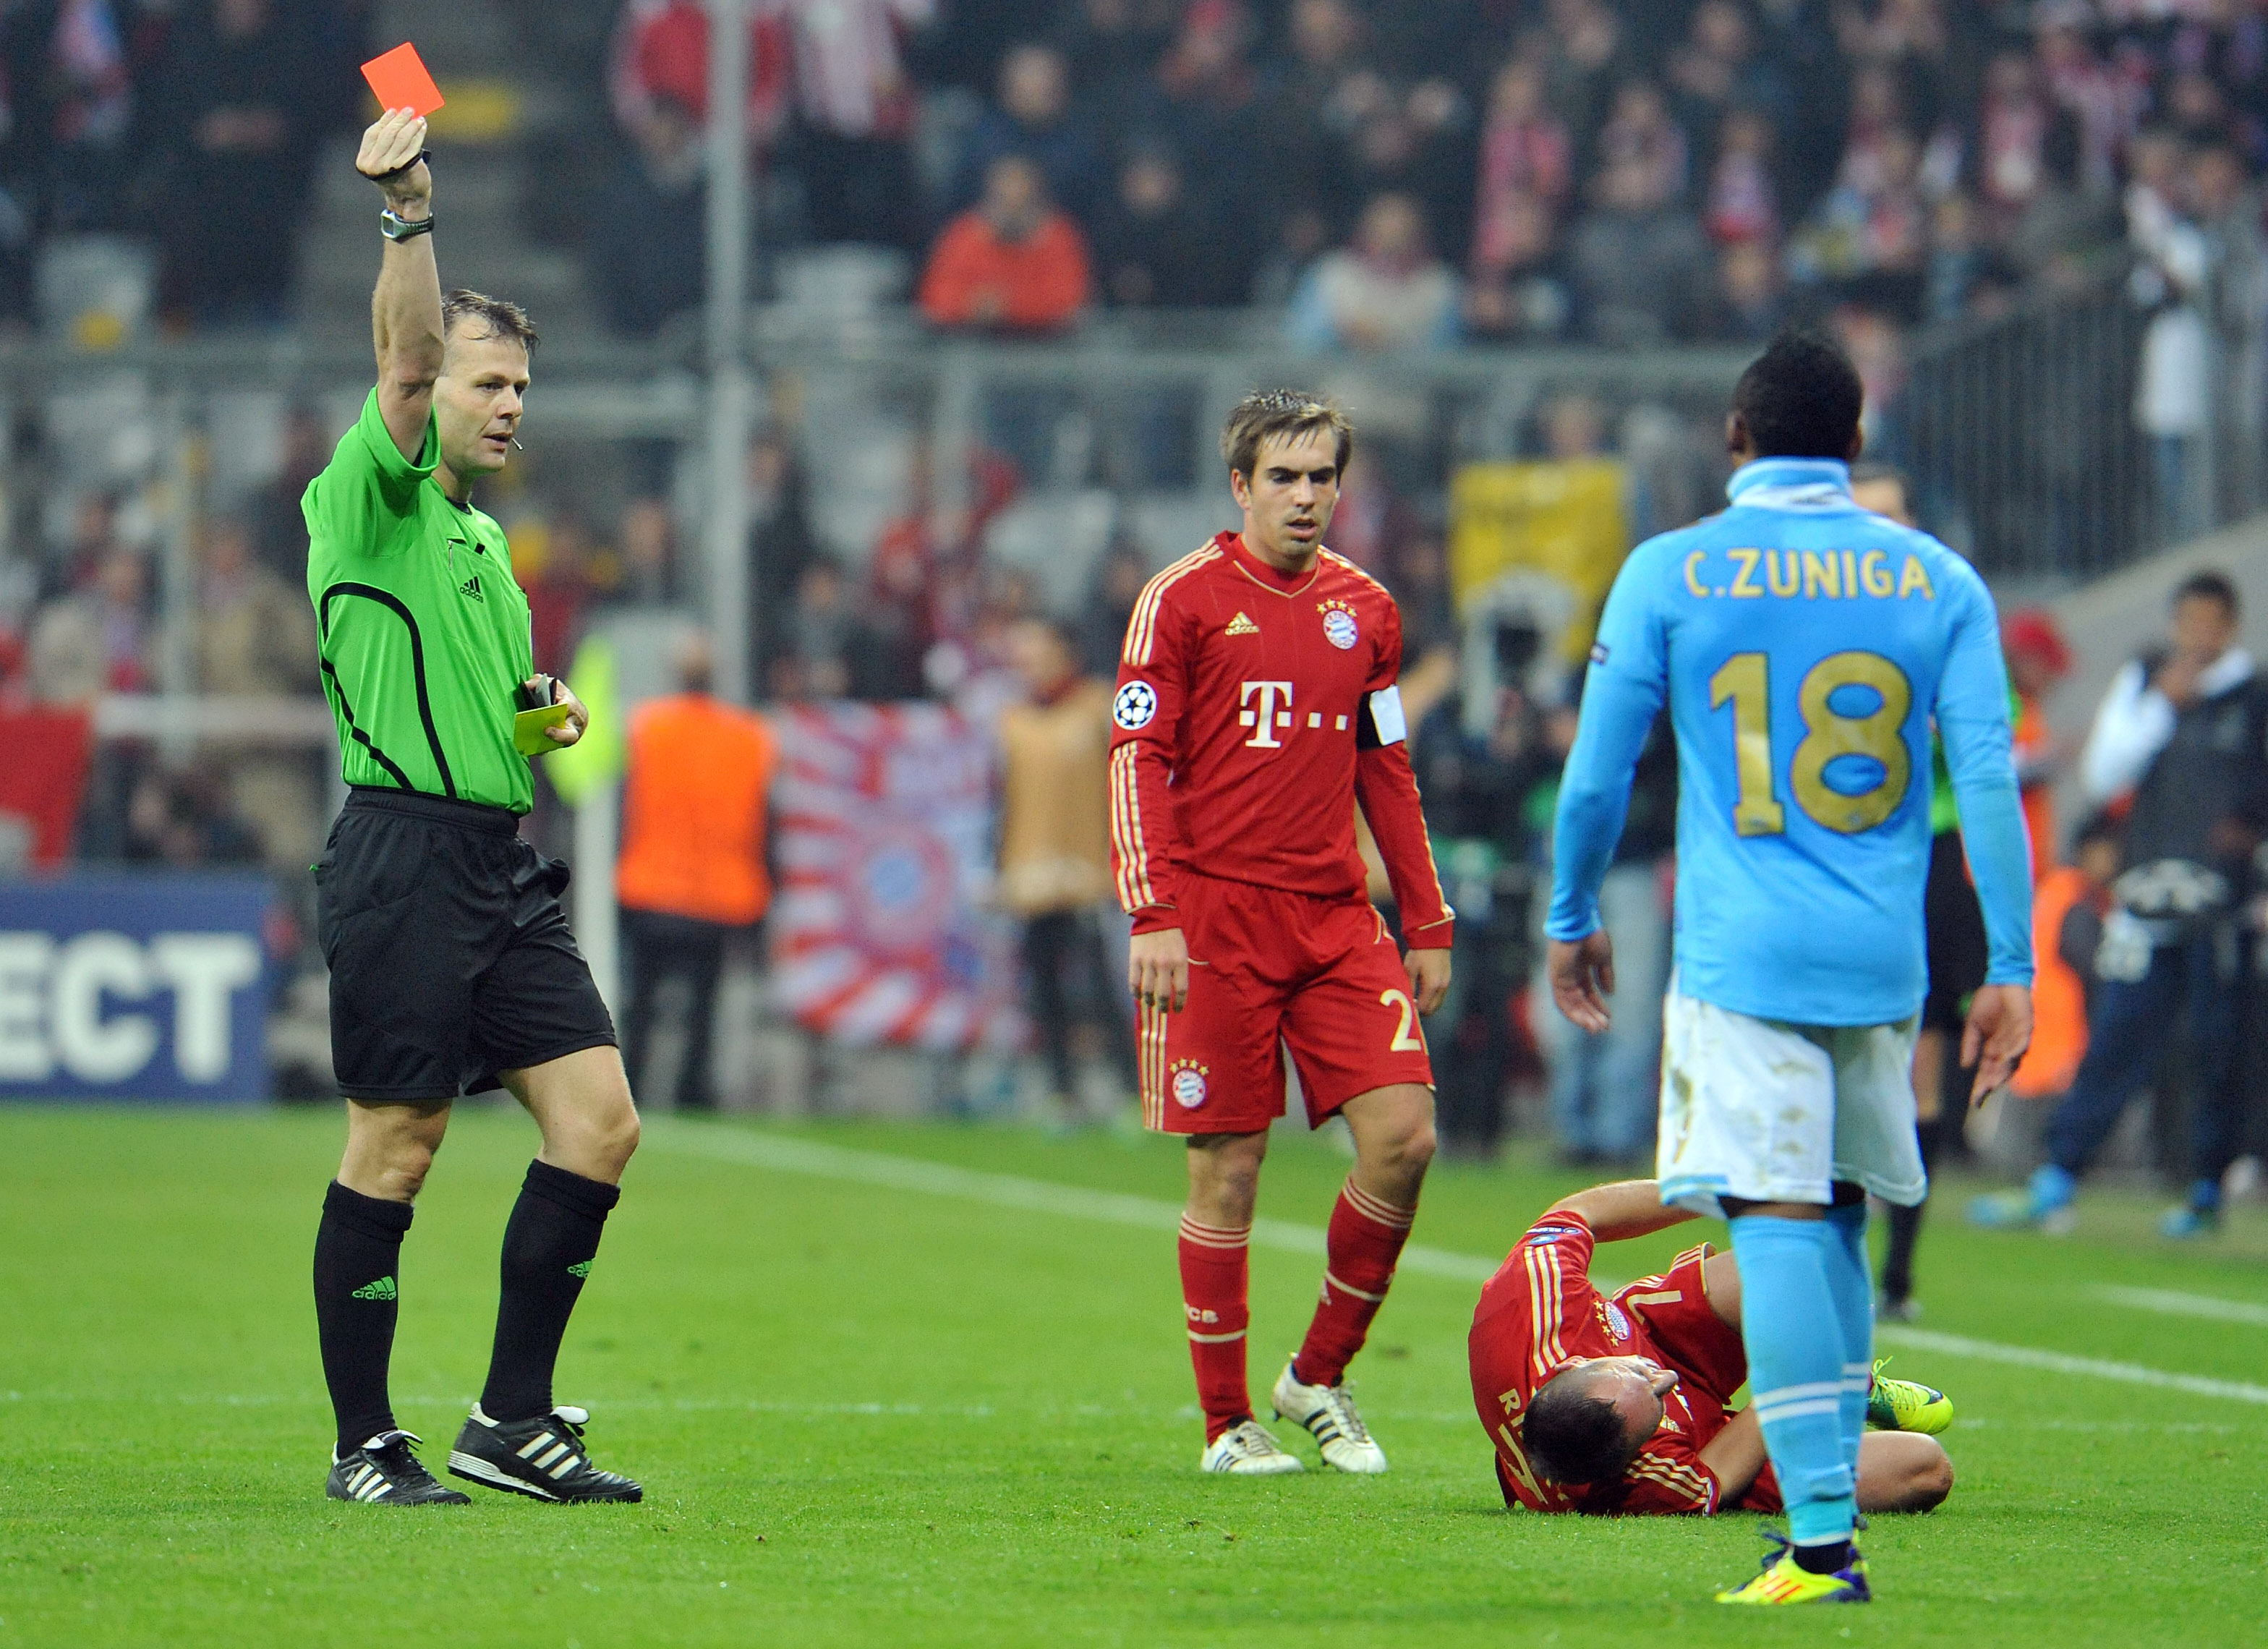 Kuipers delade ut två röda kort när Bayern München och Napoli möttes i Champions League i november. Precis som när han dömde Fulham-Juventus mars 2010. Repris att vänta för Milan?